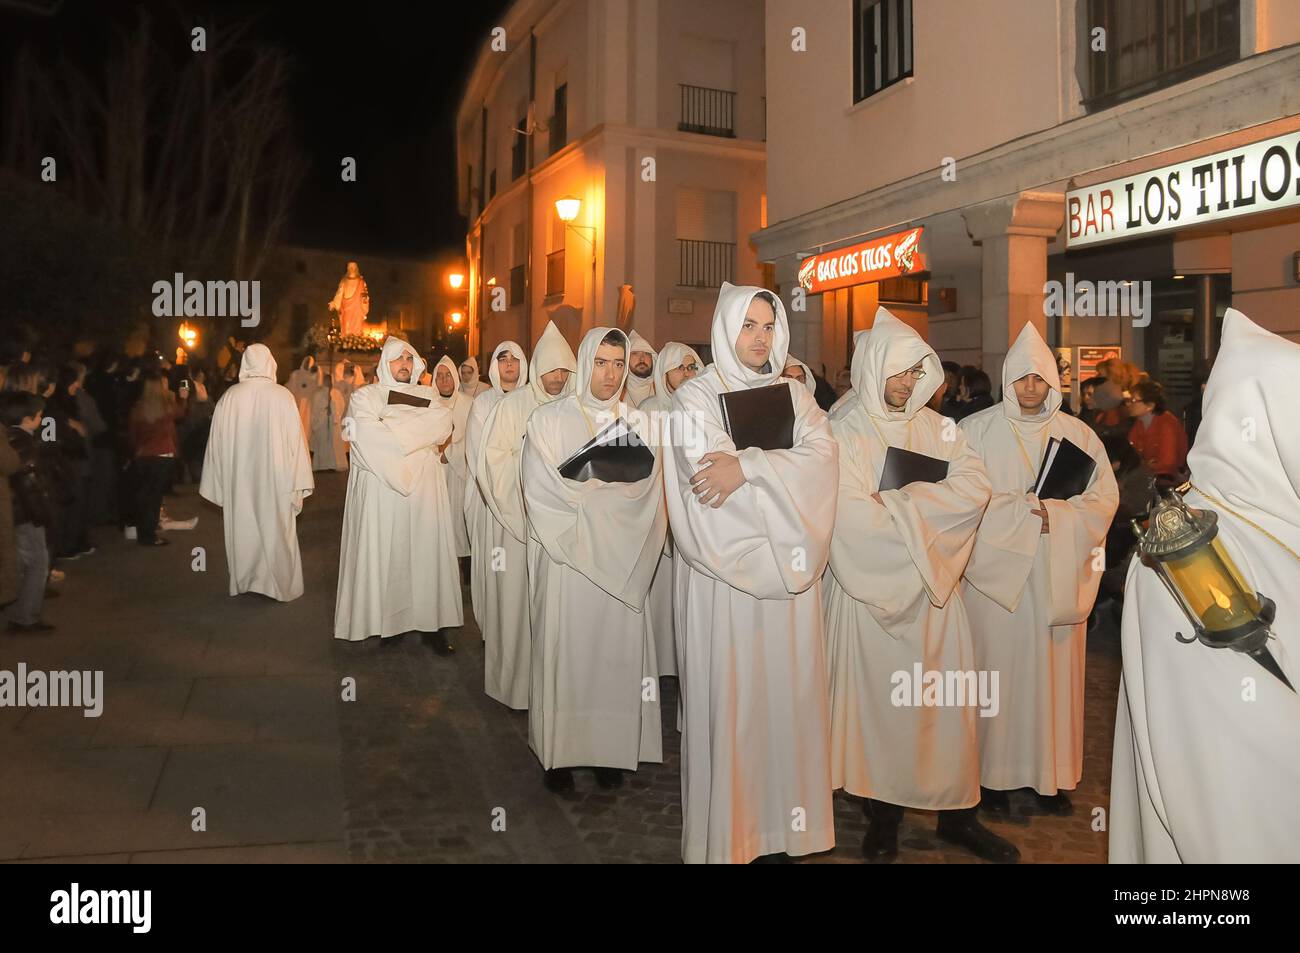 Settimana Santa a Zamora, Spagna. Processione nella notte della Passione Sabato della Fratellanza Penitenziale di nostro Signore Gesù, luce e vita. Foto Stock